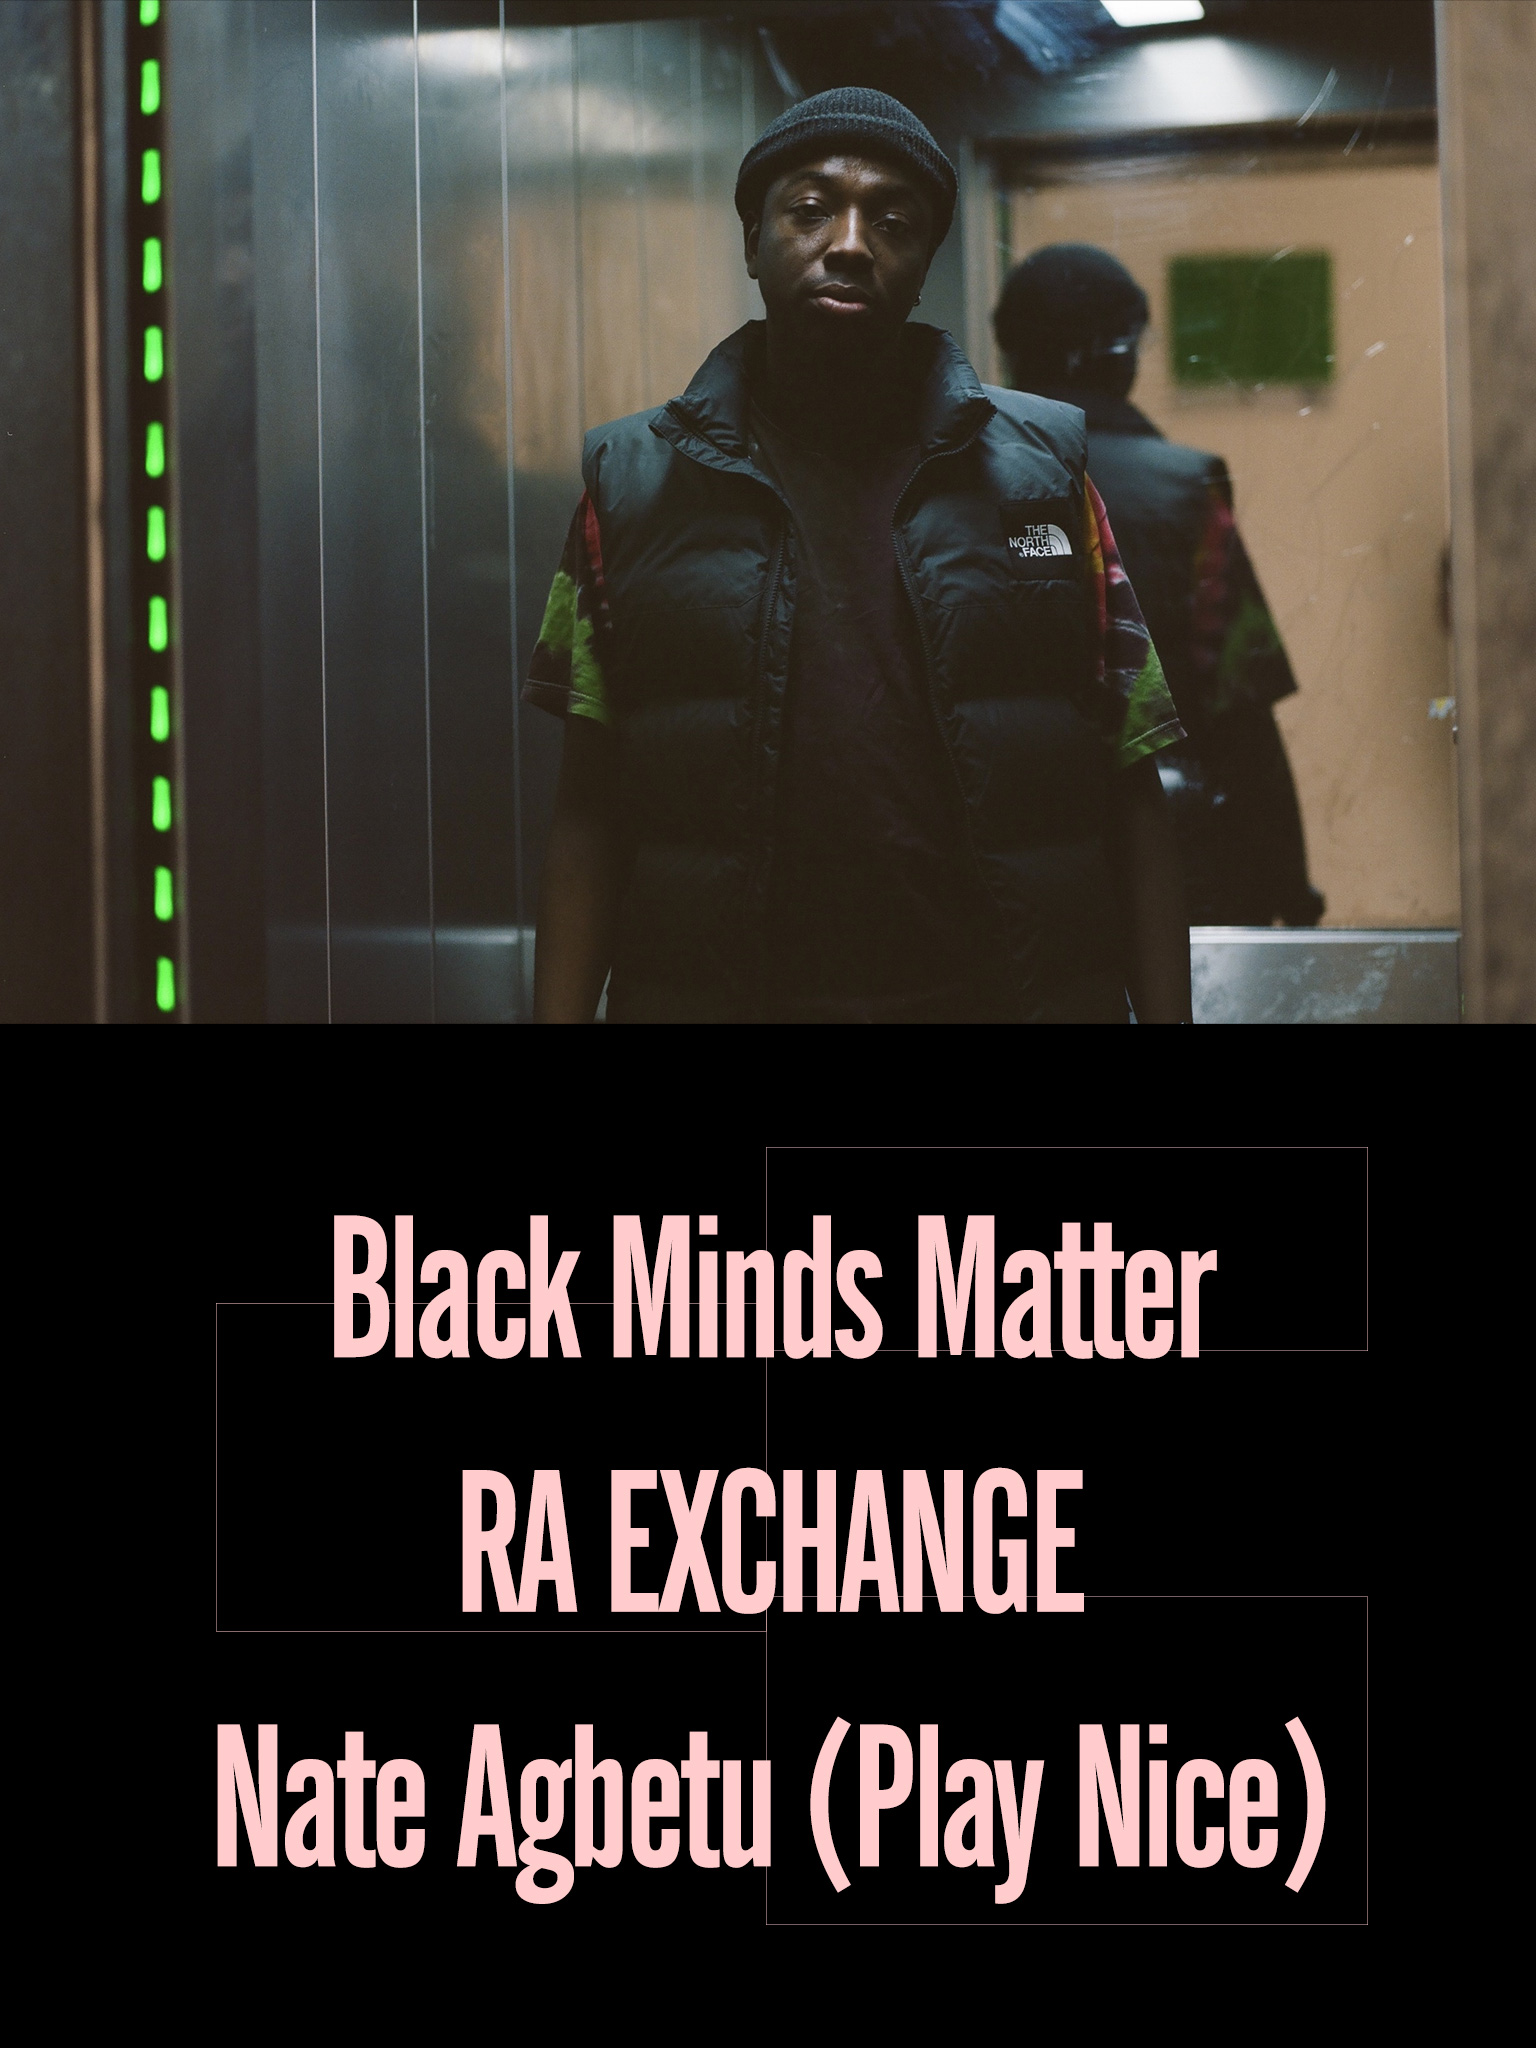 Black Minds Matter UK x RA Exchange: Nate Agbetu (Play Nice)